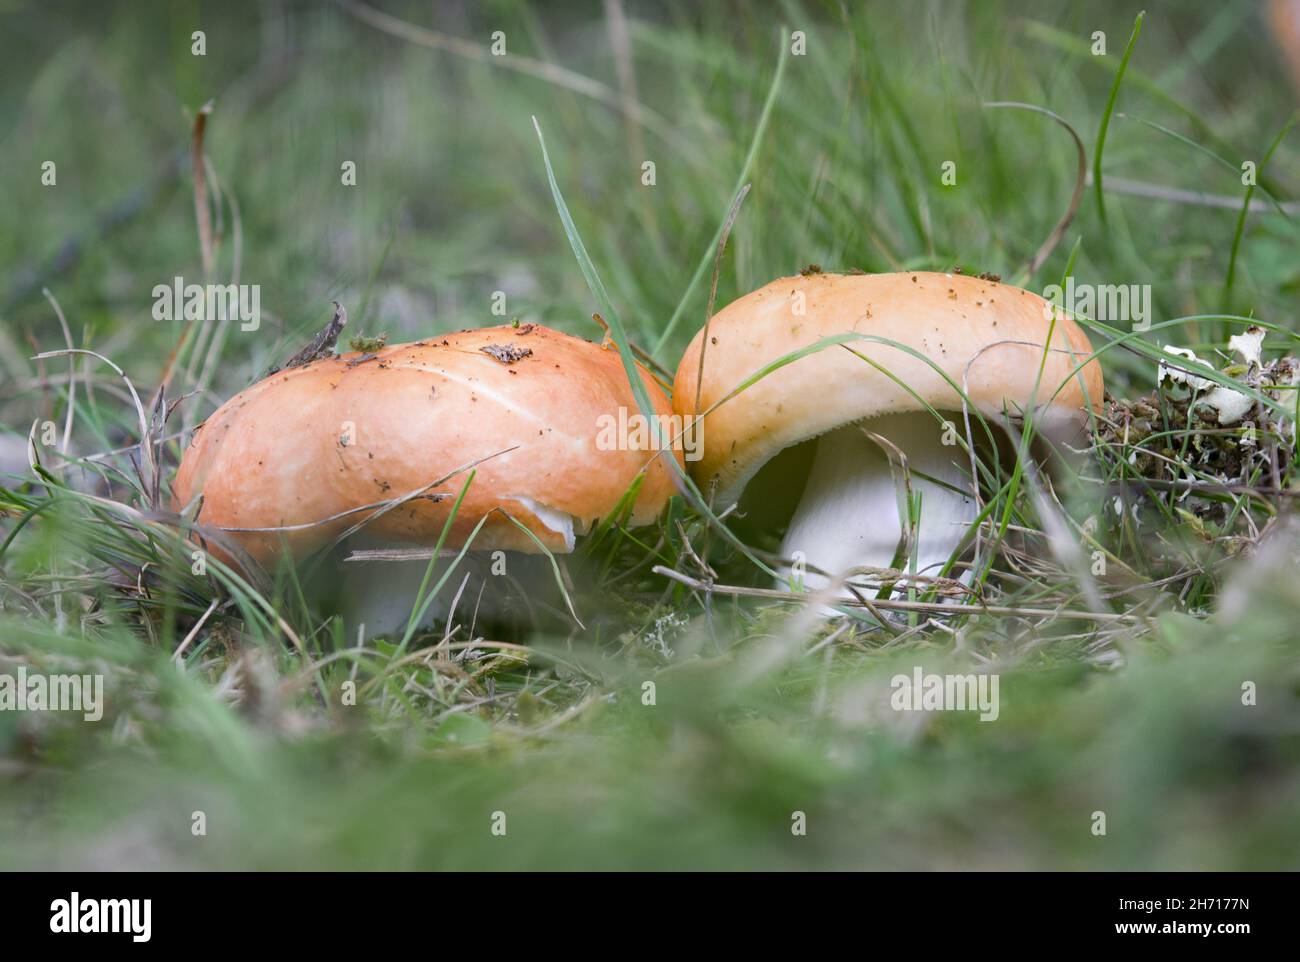 Closeup shot of Russula aurea mushrooms in a forest Stock Photo